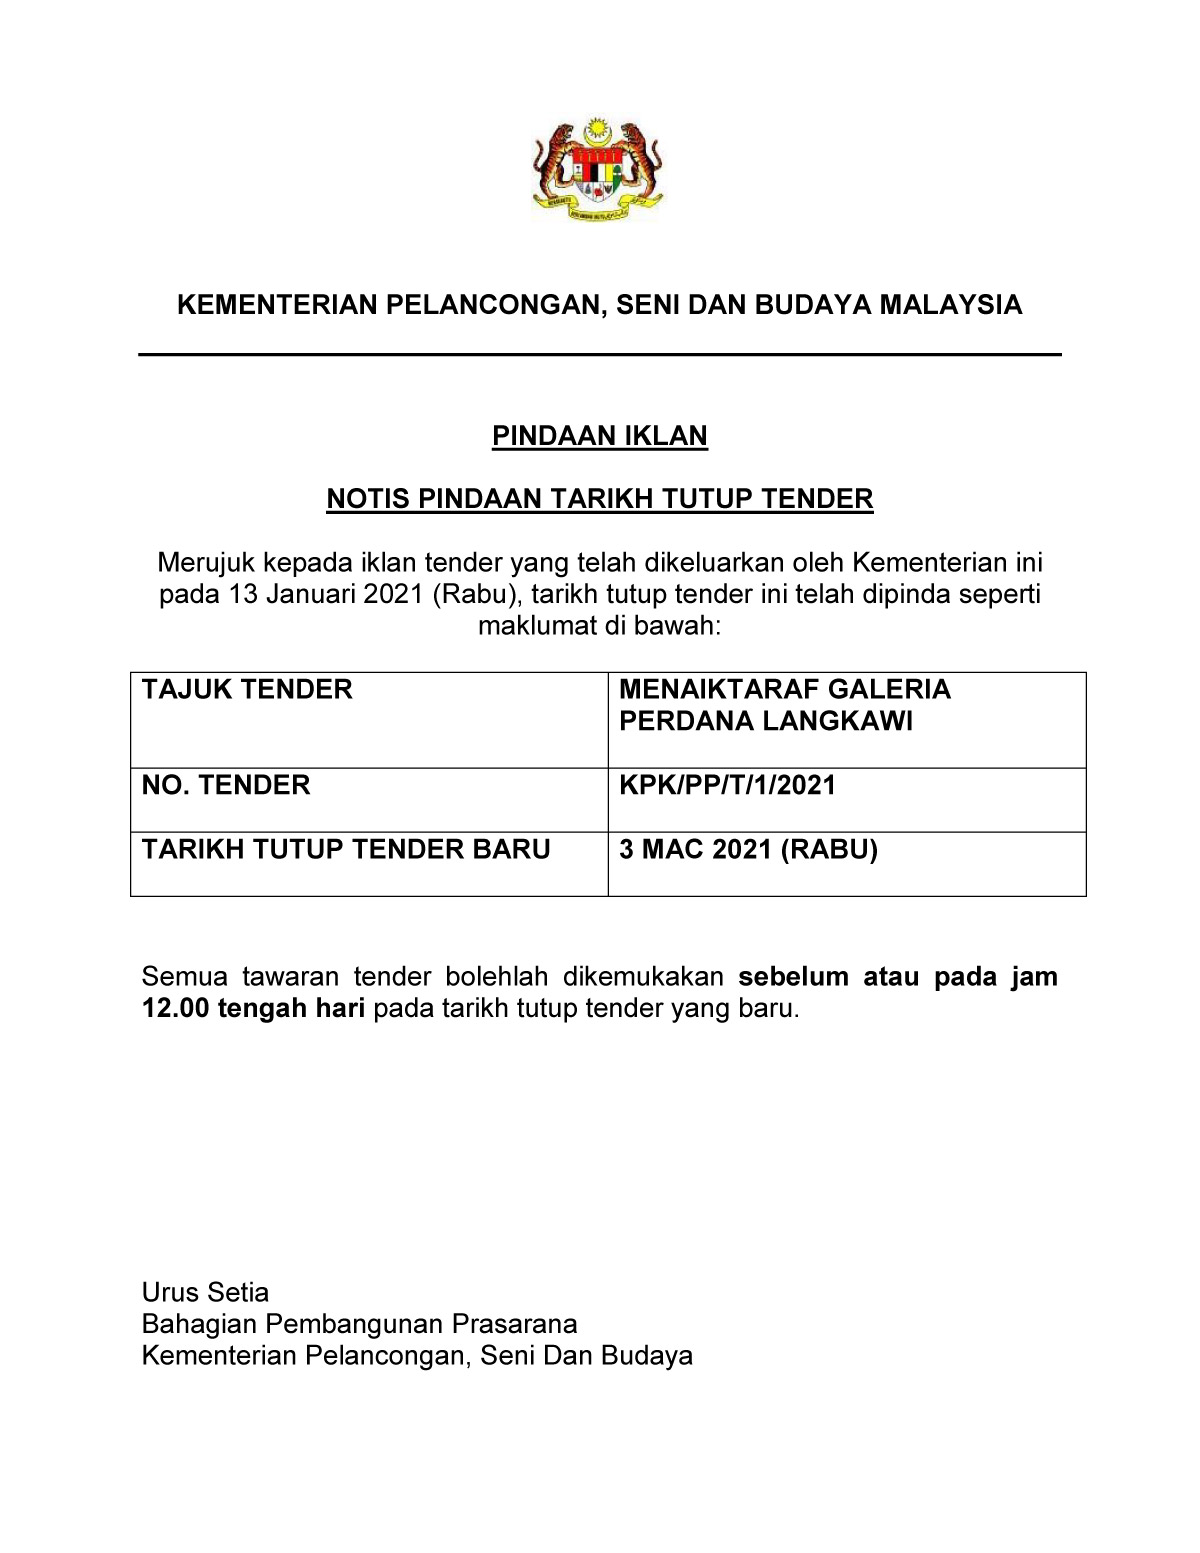 Notis Pindaan Tarikh Tutup Tender Menaiktaraf Galeria Perdana Langkawi (KPK/PP/T/1/2021)